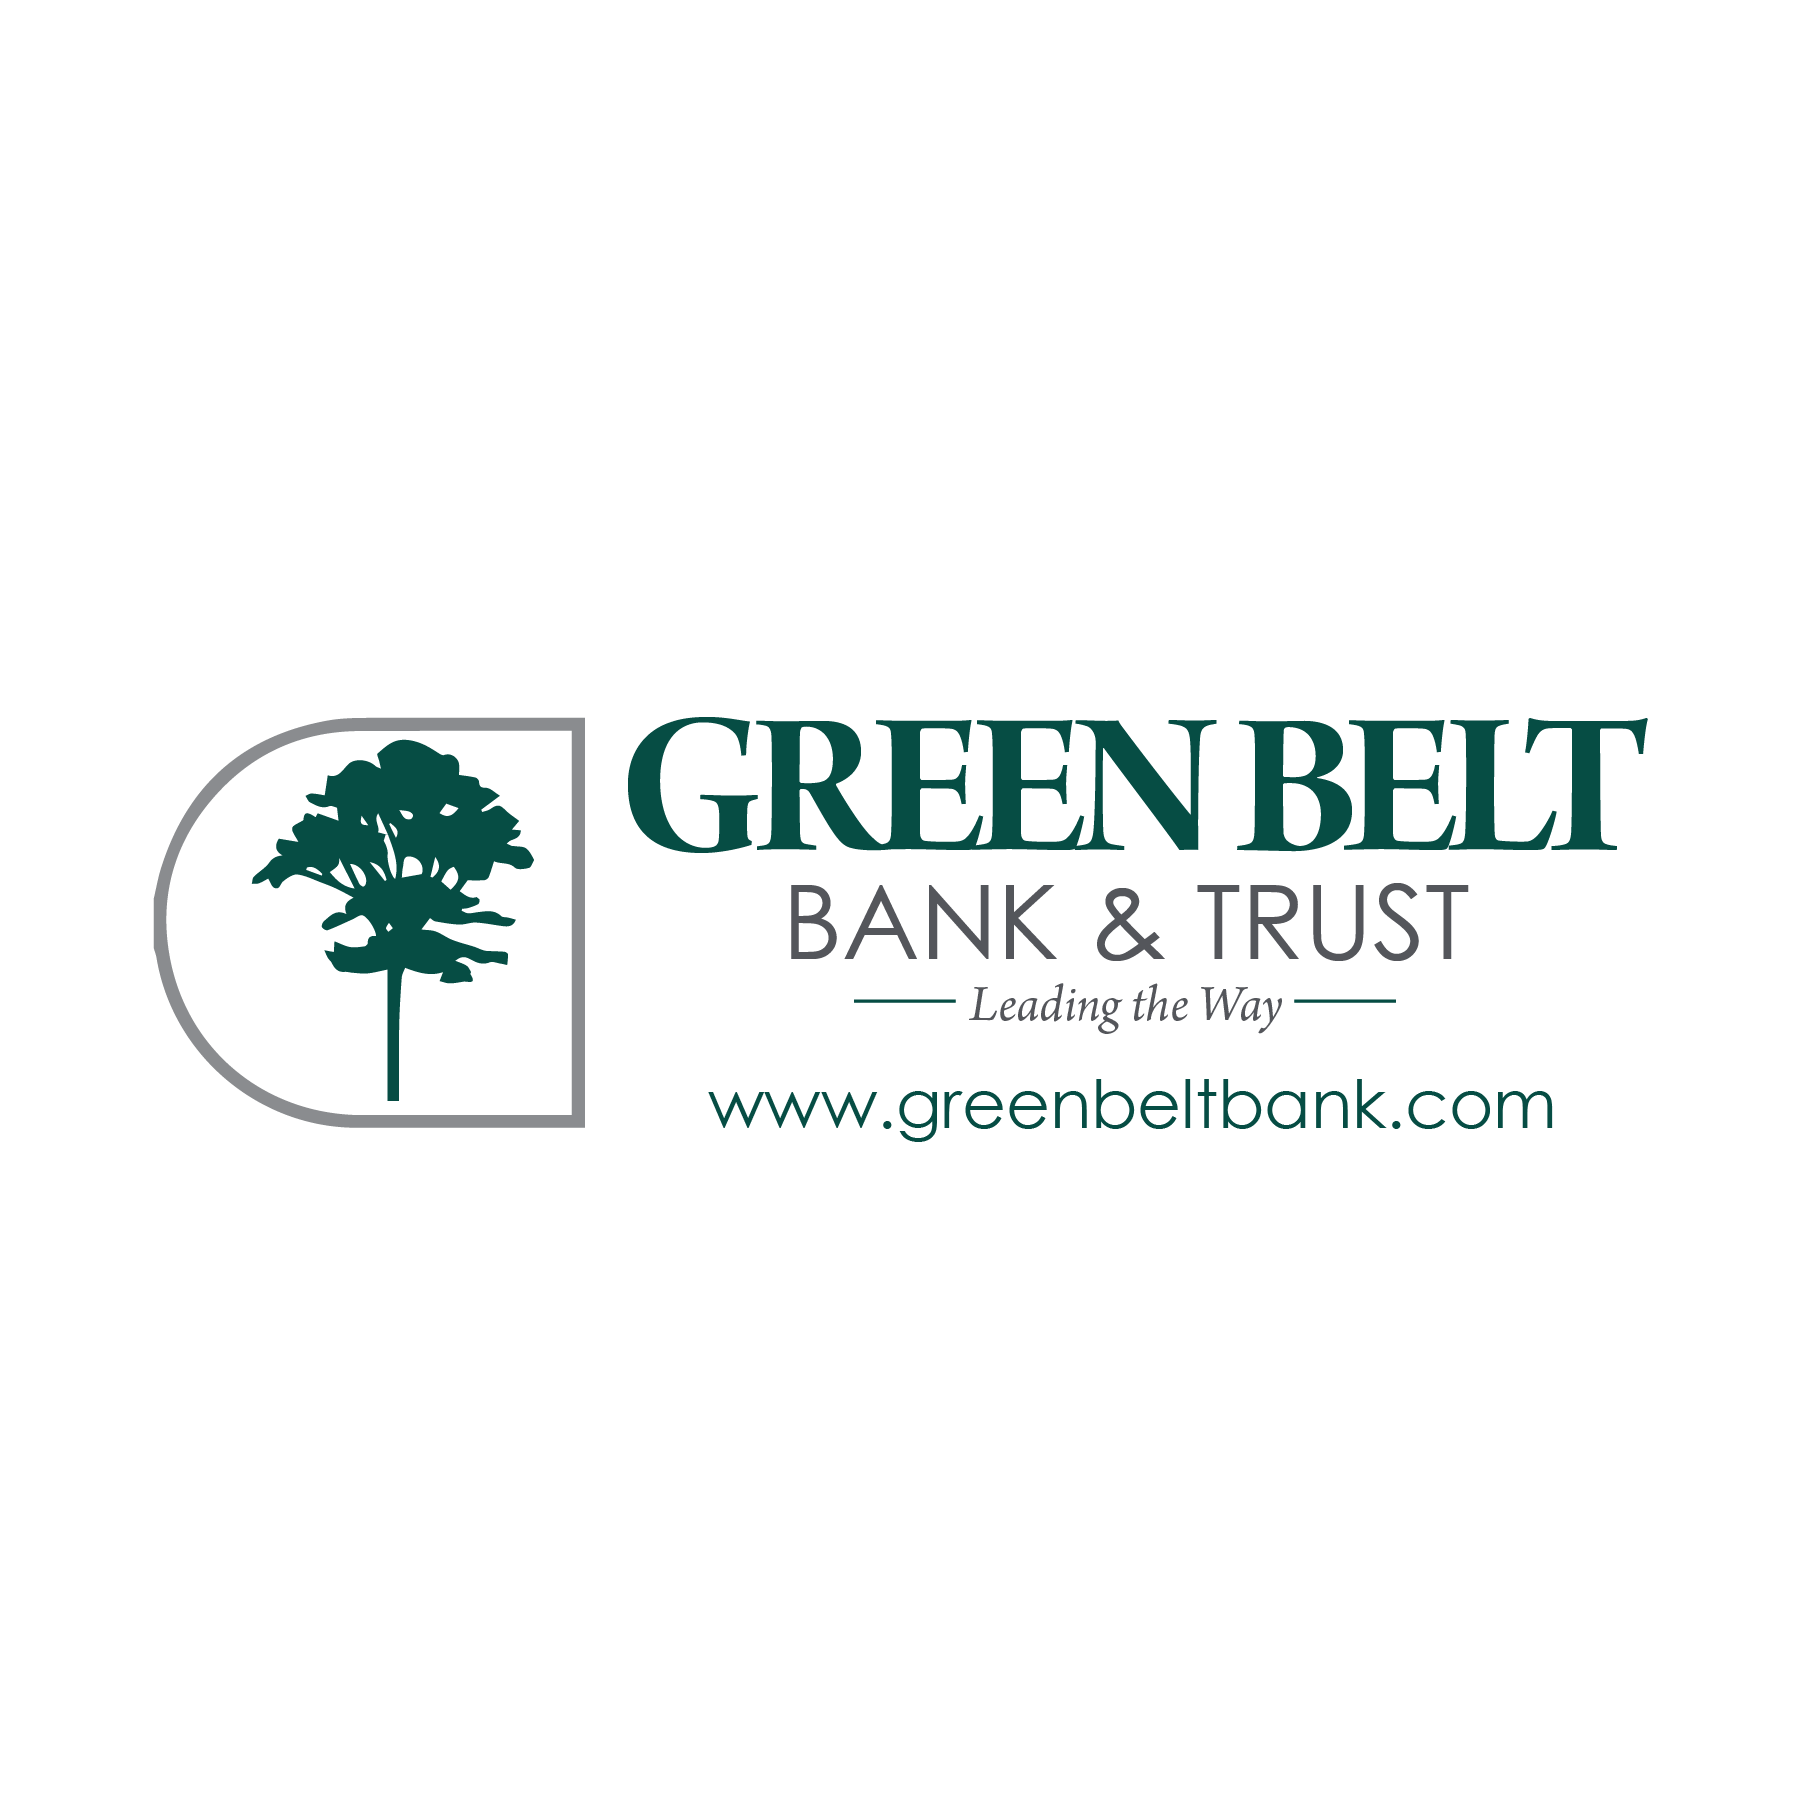 Green Belt Bank & Trust logo